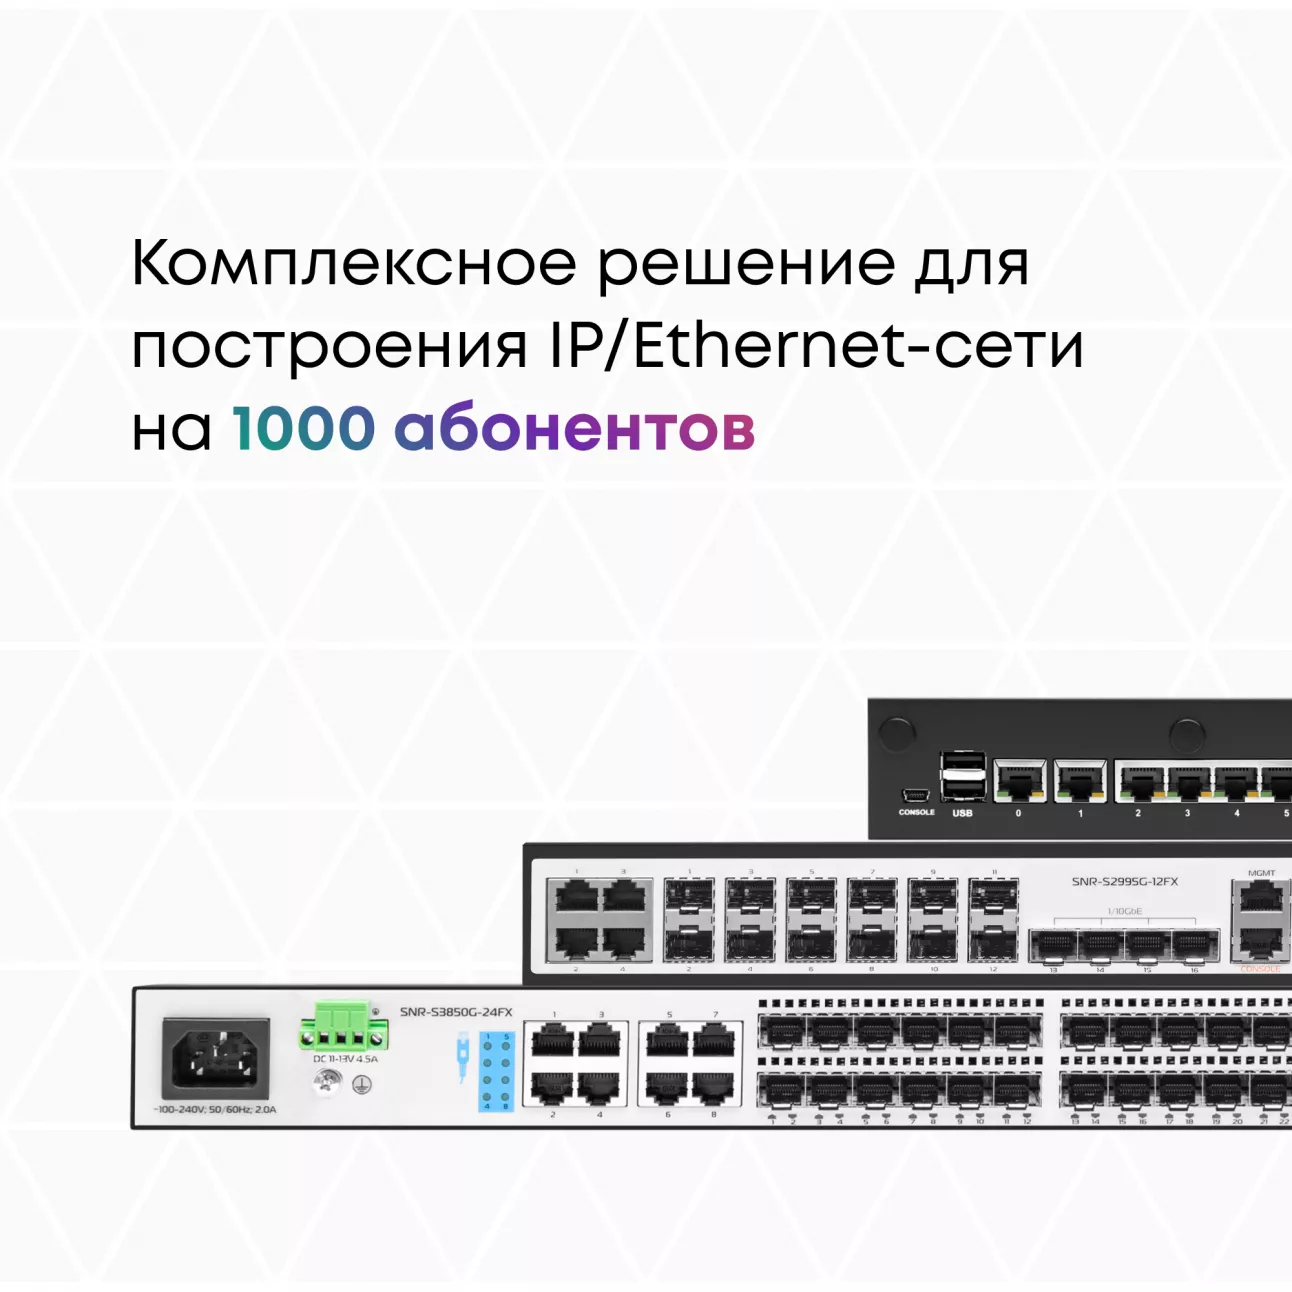 Комплексное решение для построения IP/Ethernet-сети на 1000 абонентов